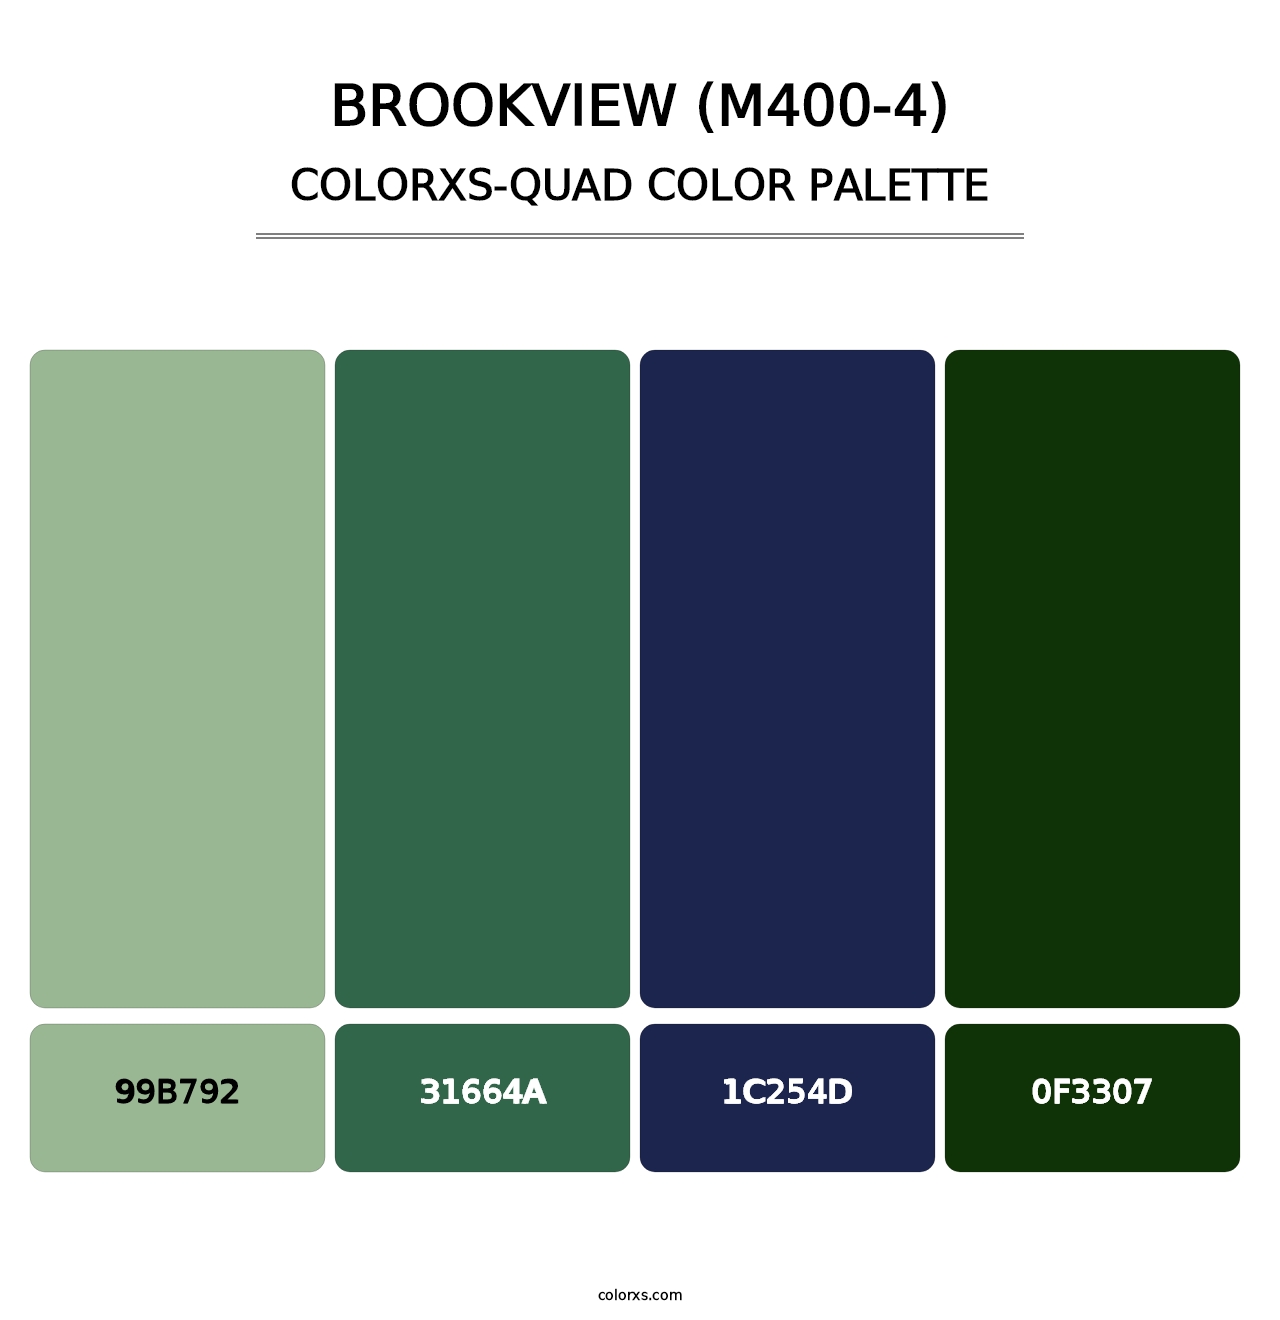 Brookview (M400-4) - Colorxs Quad Palette